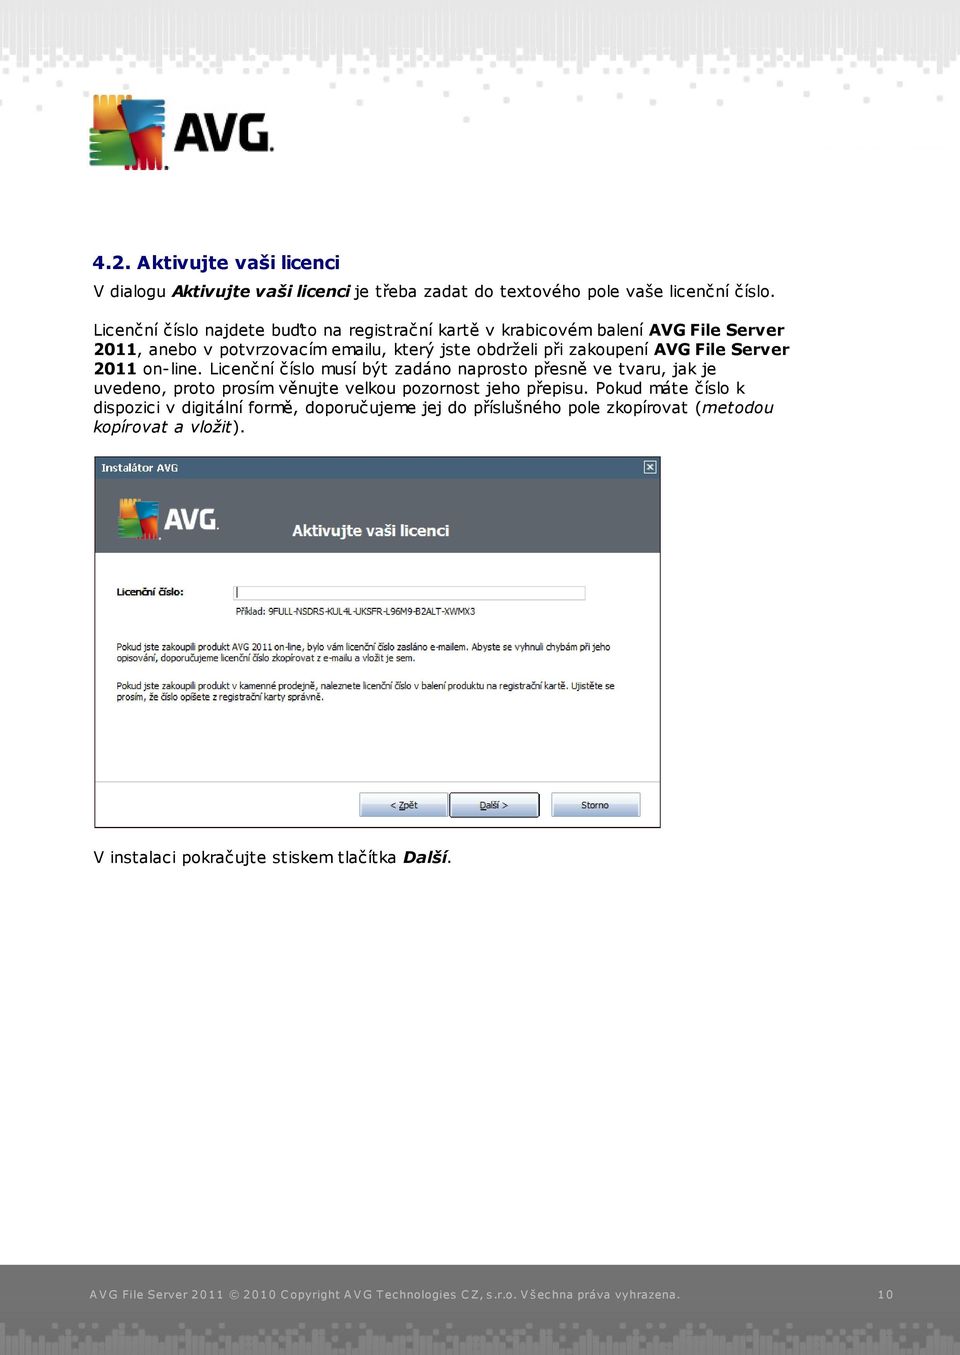 zakoupení AVG File Server 2011 on-line.